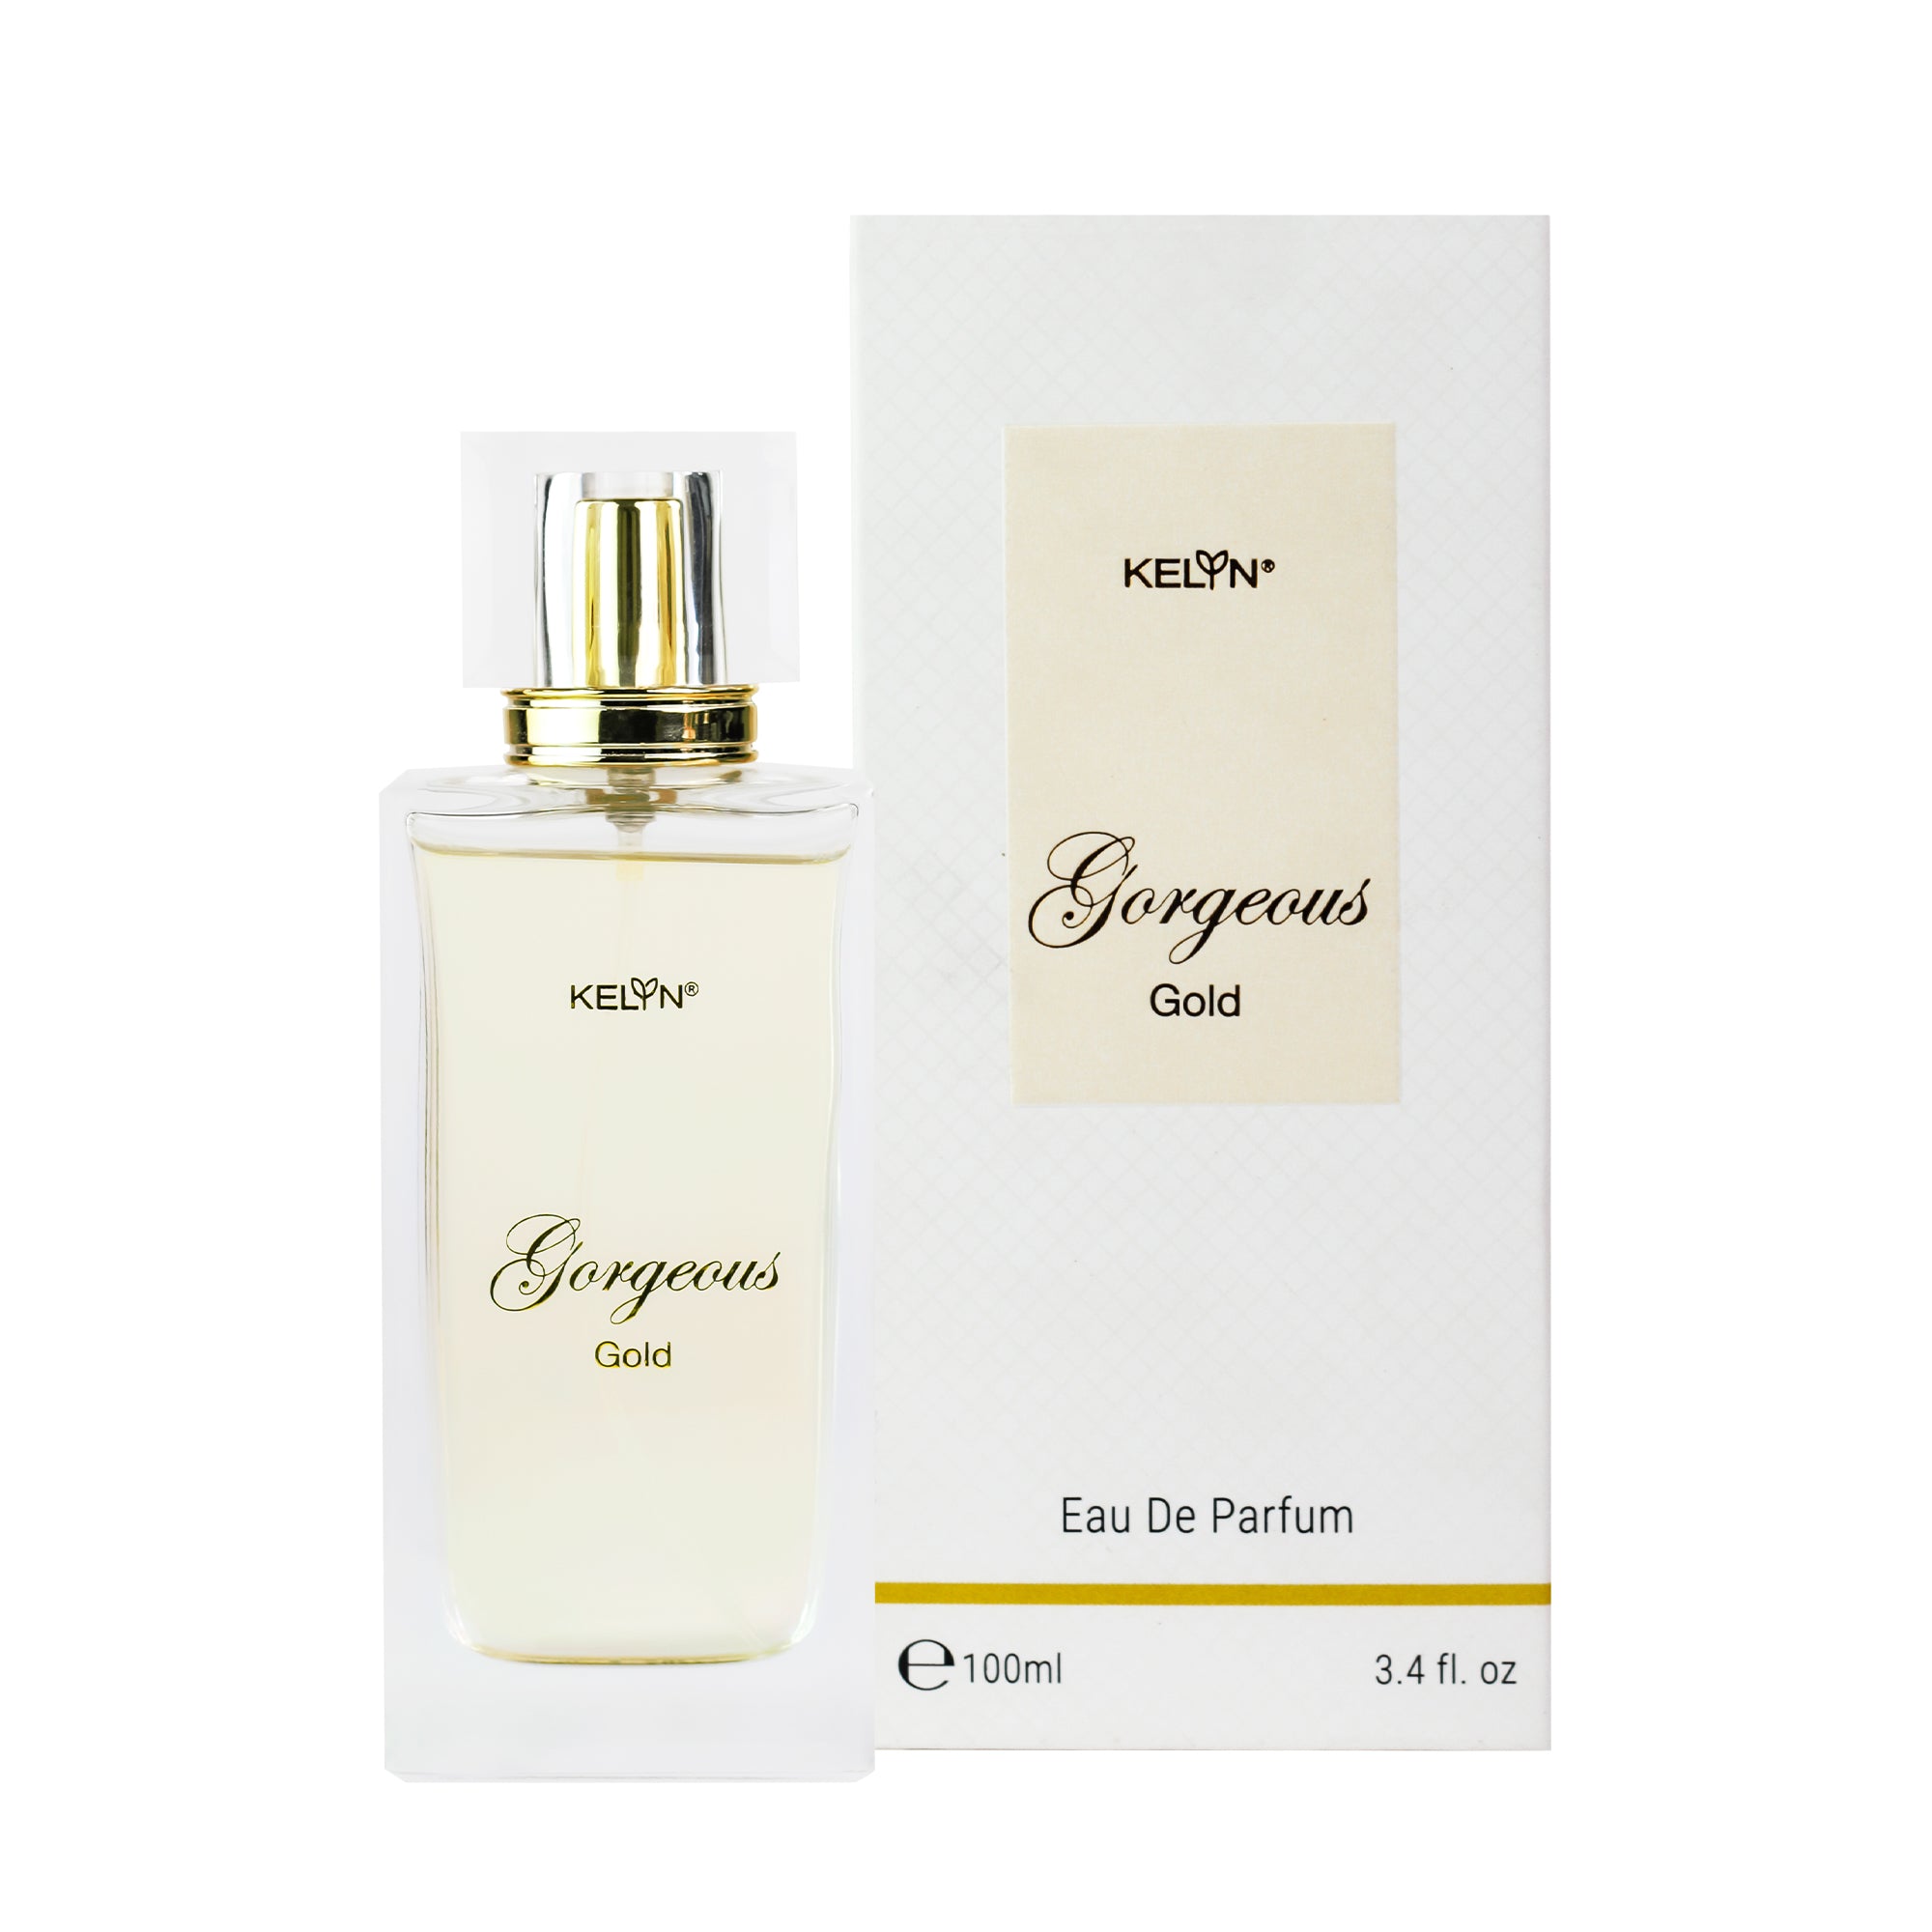 EDP Perfume for Women – Gorgeous Gold, 100ml